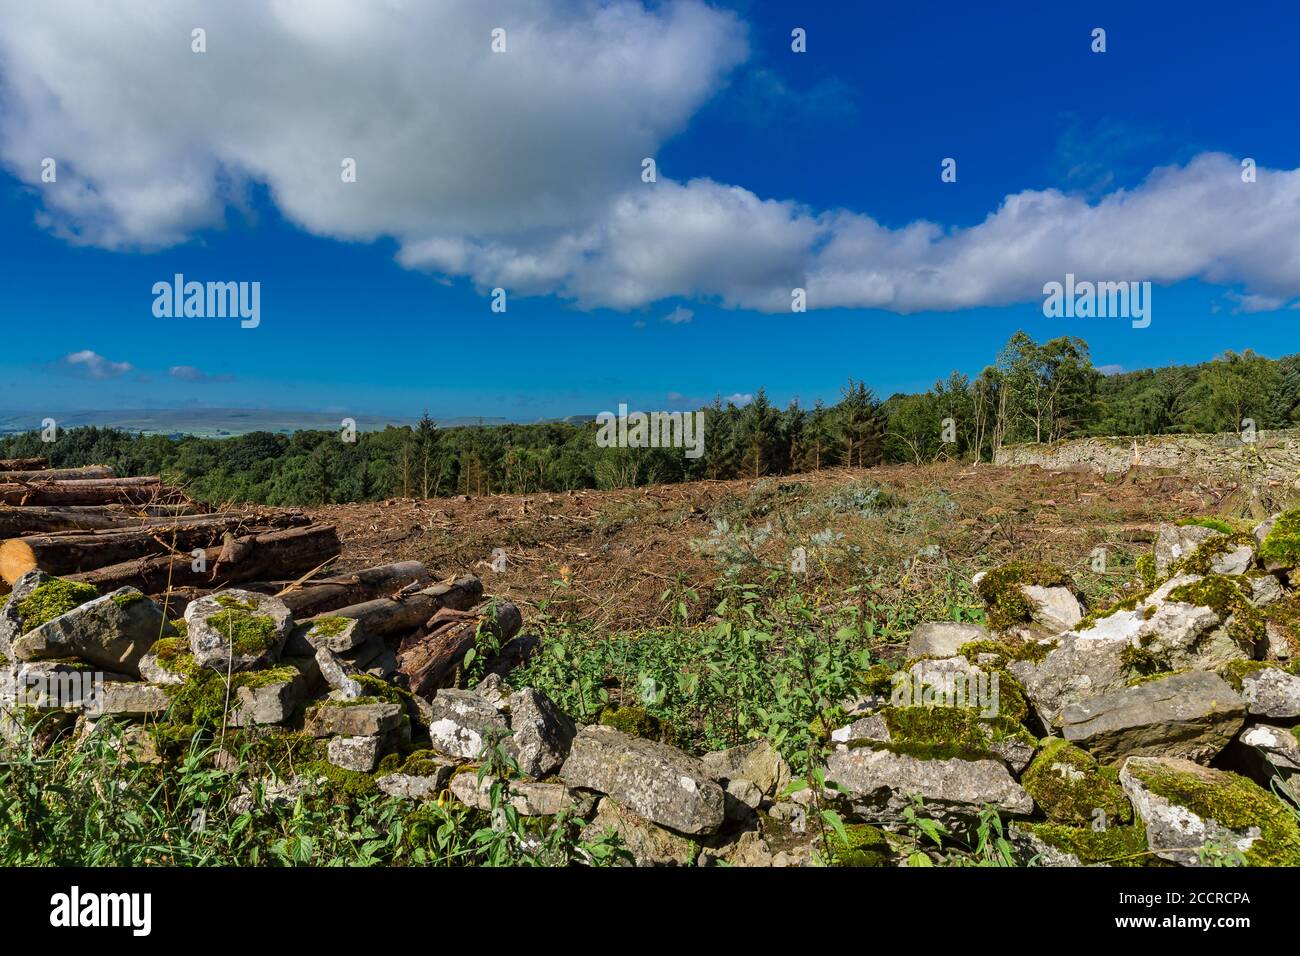 Entwaldung von Hektar Pinienwäldern in den Yorkshire Dales, England, Großbritannien. Querformat, horizontal. Platz für Kopie. Stockfoto